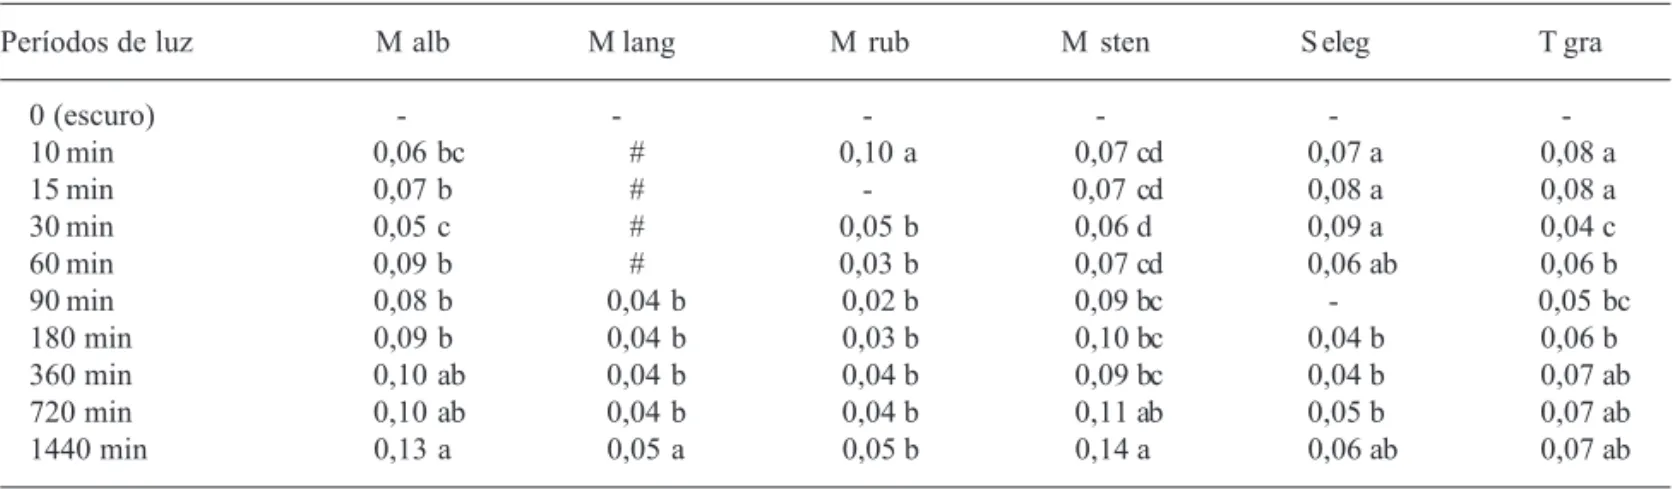 Tabela 1. Velocidade média de germinação de sementes de Miconia albicans (M alb), M. langsdorffii (M lang), M